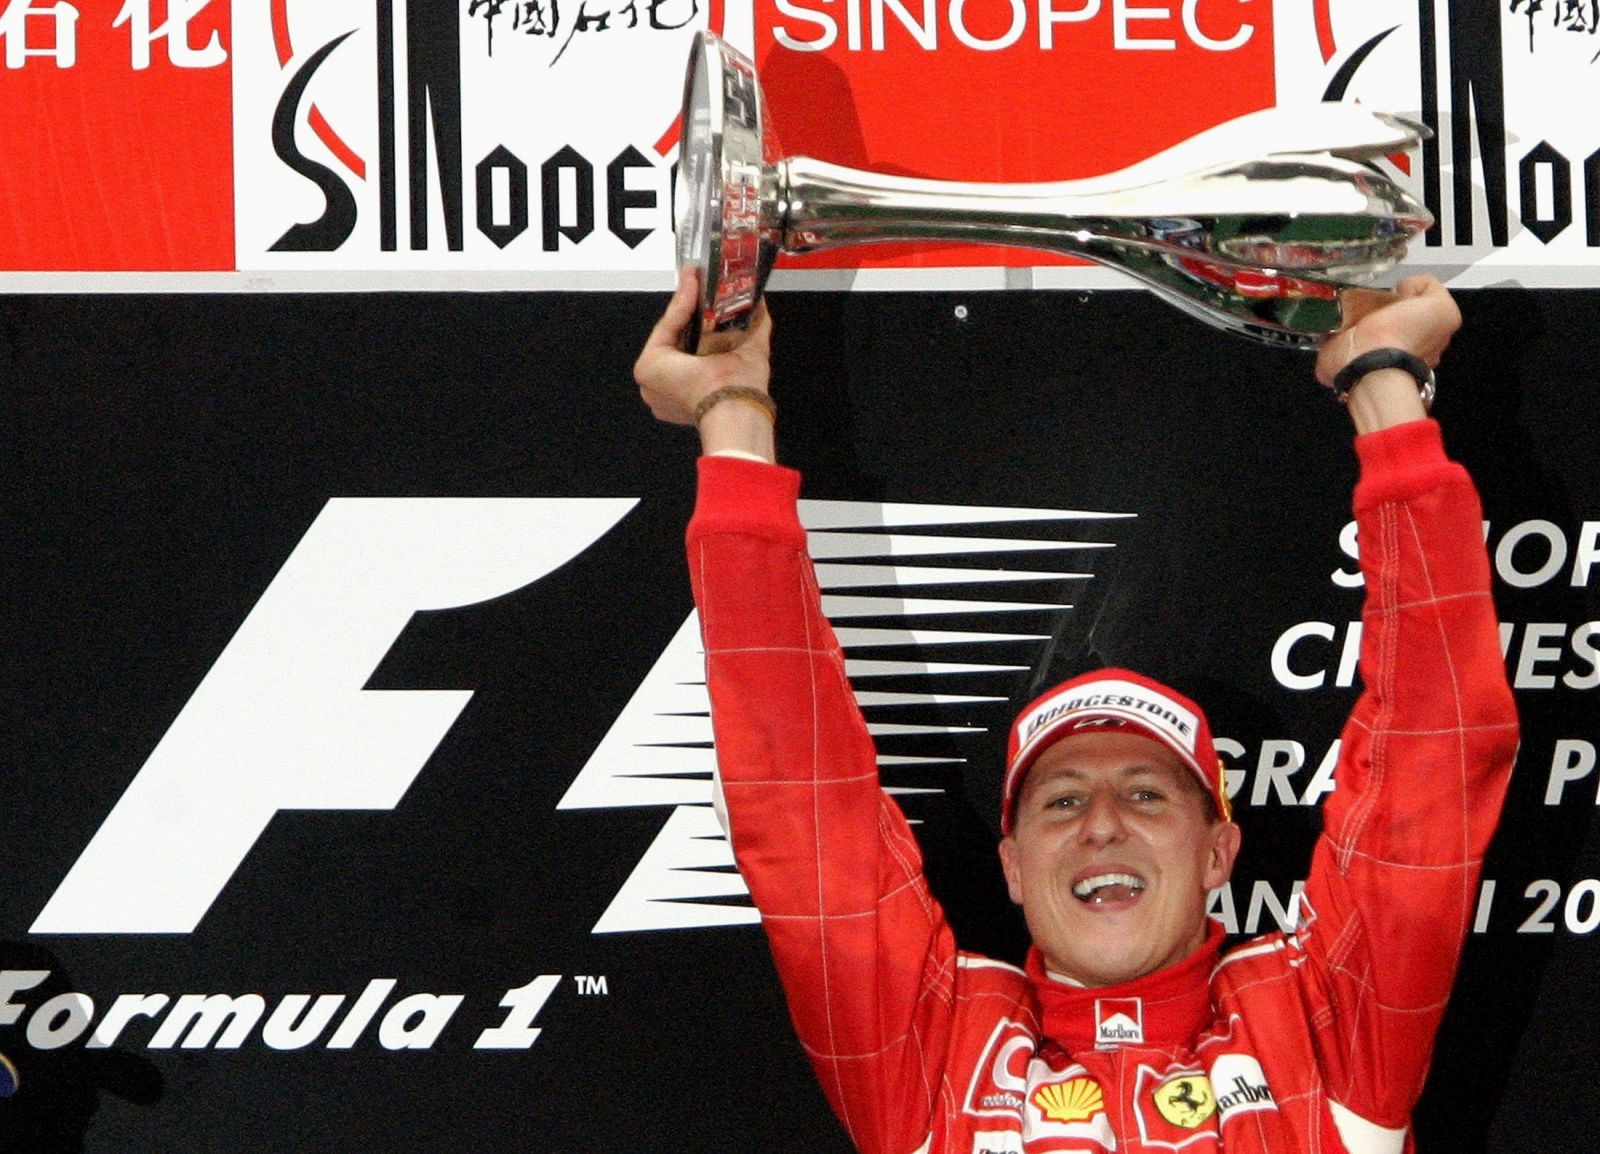 Dokument o Michaelovi Schumacherovi vyjde ešte tento rok, údajne sa v ňom aj objaví. Jeho zdravotný stav je nejasný